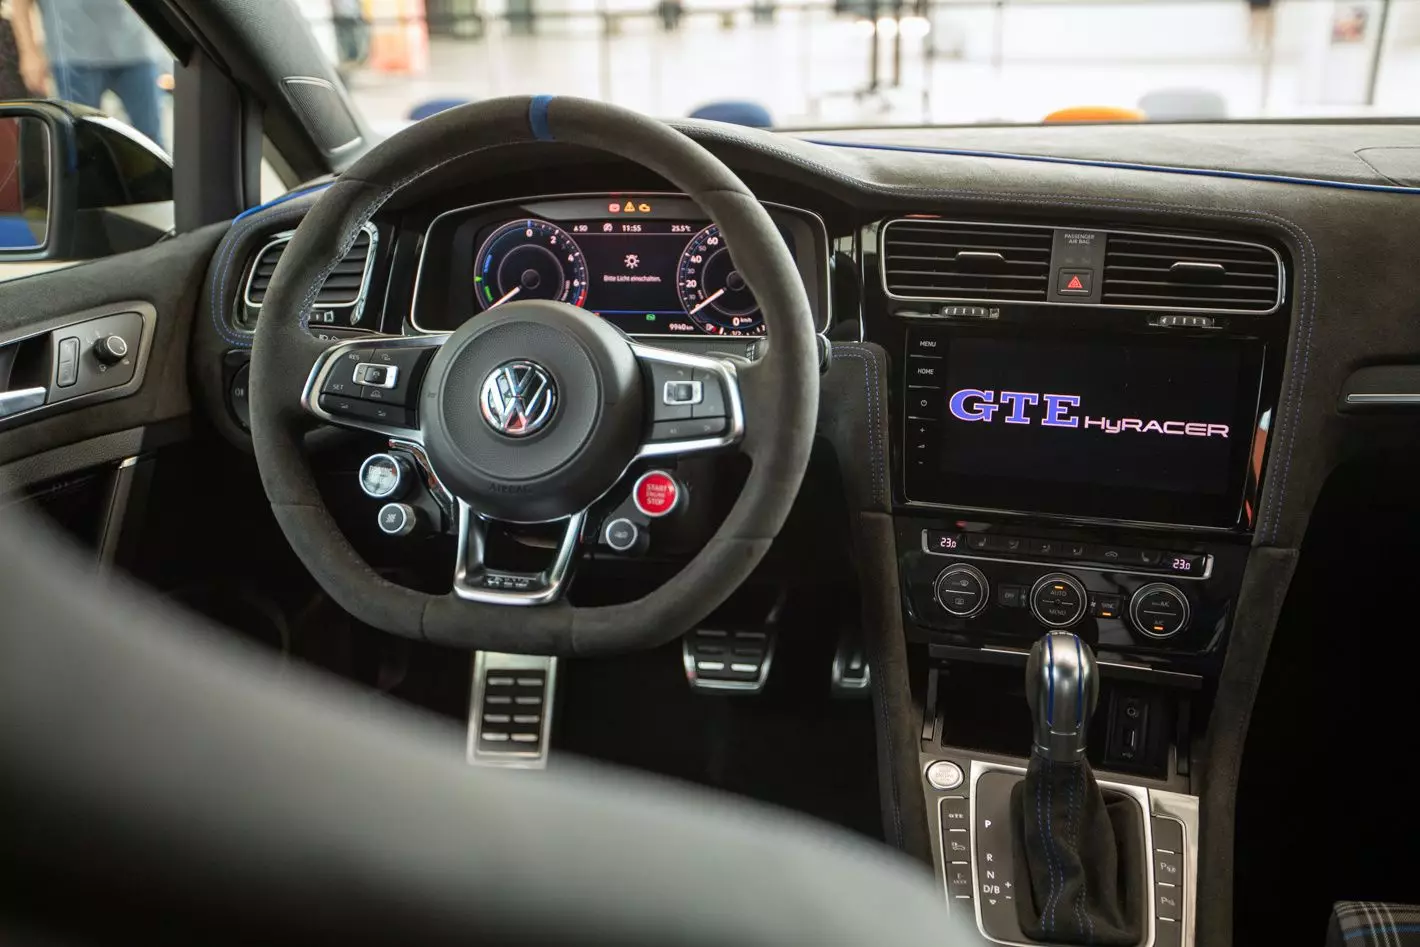 Volkswagen Golf GTE HyRacer 2020, Wörthersee